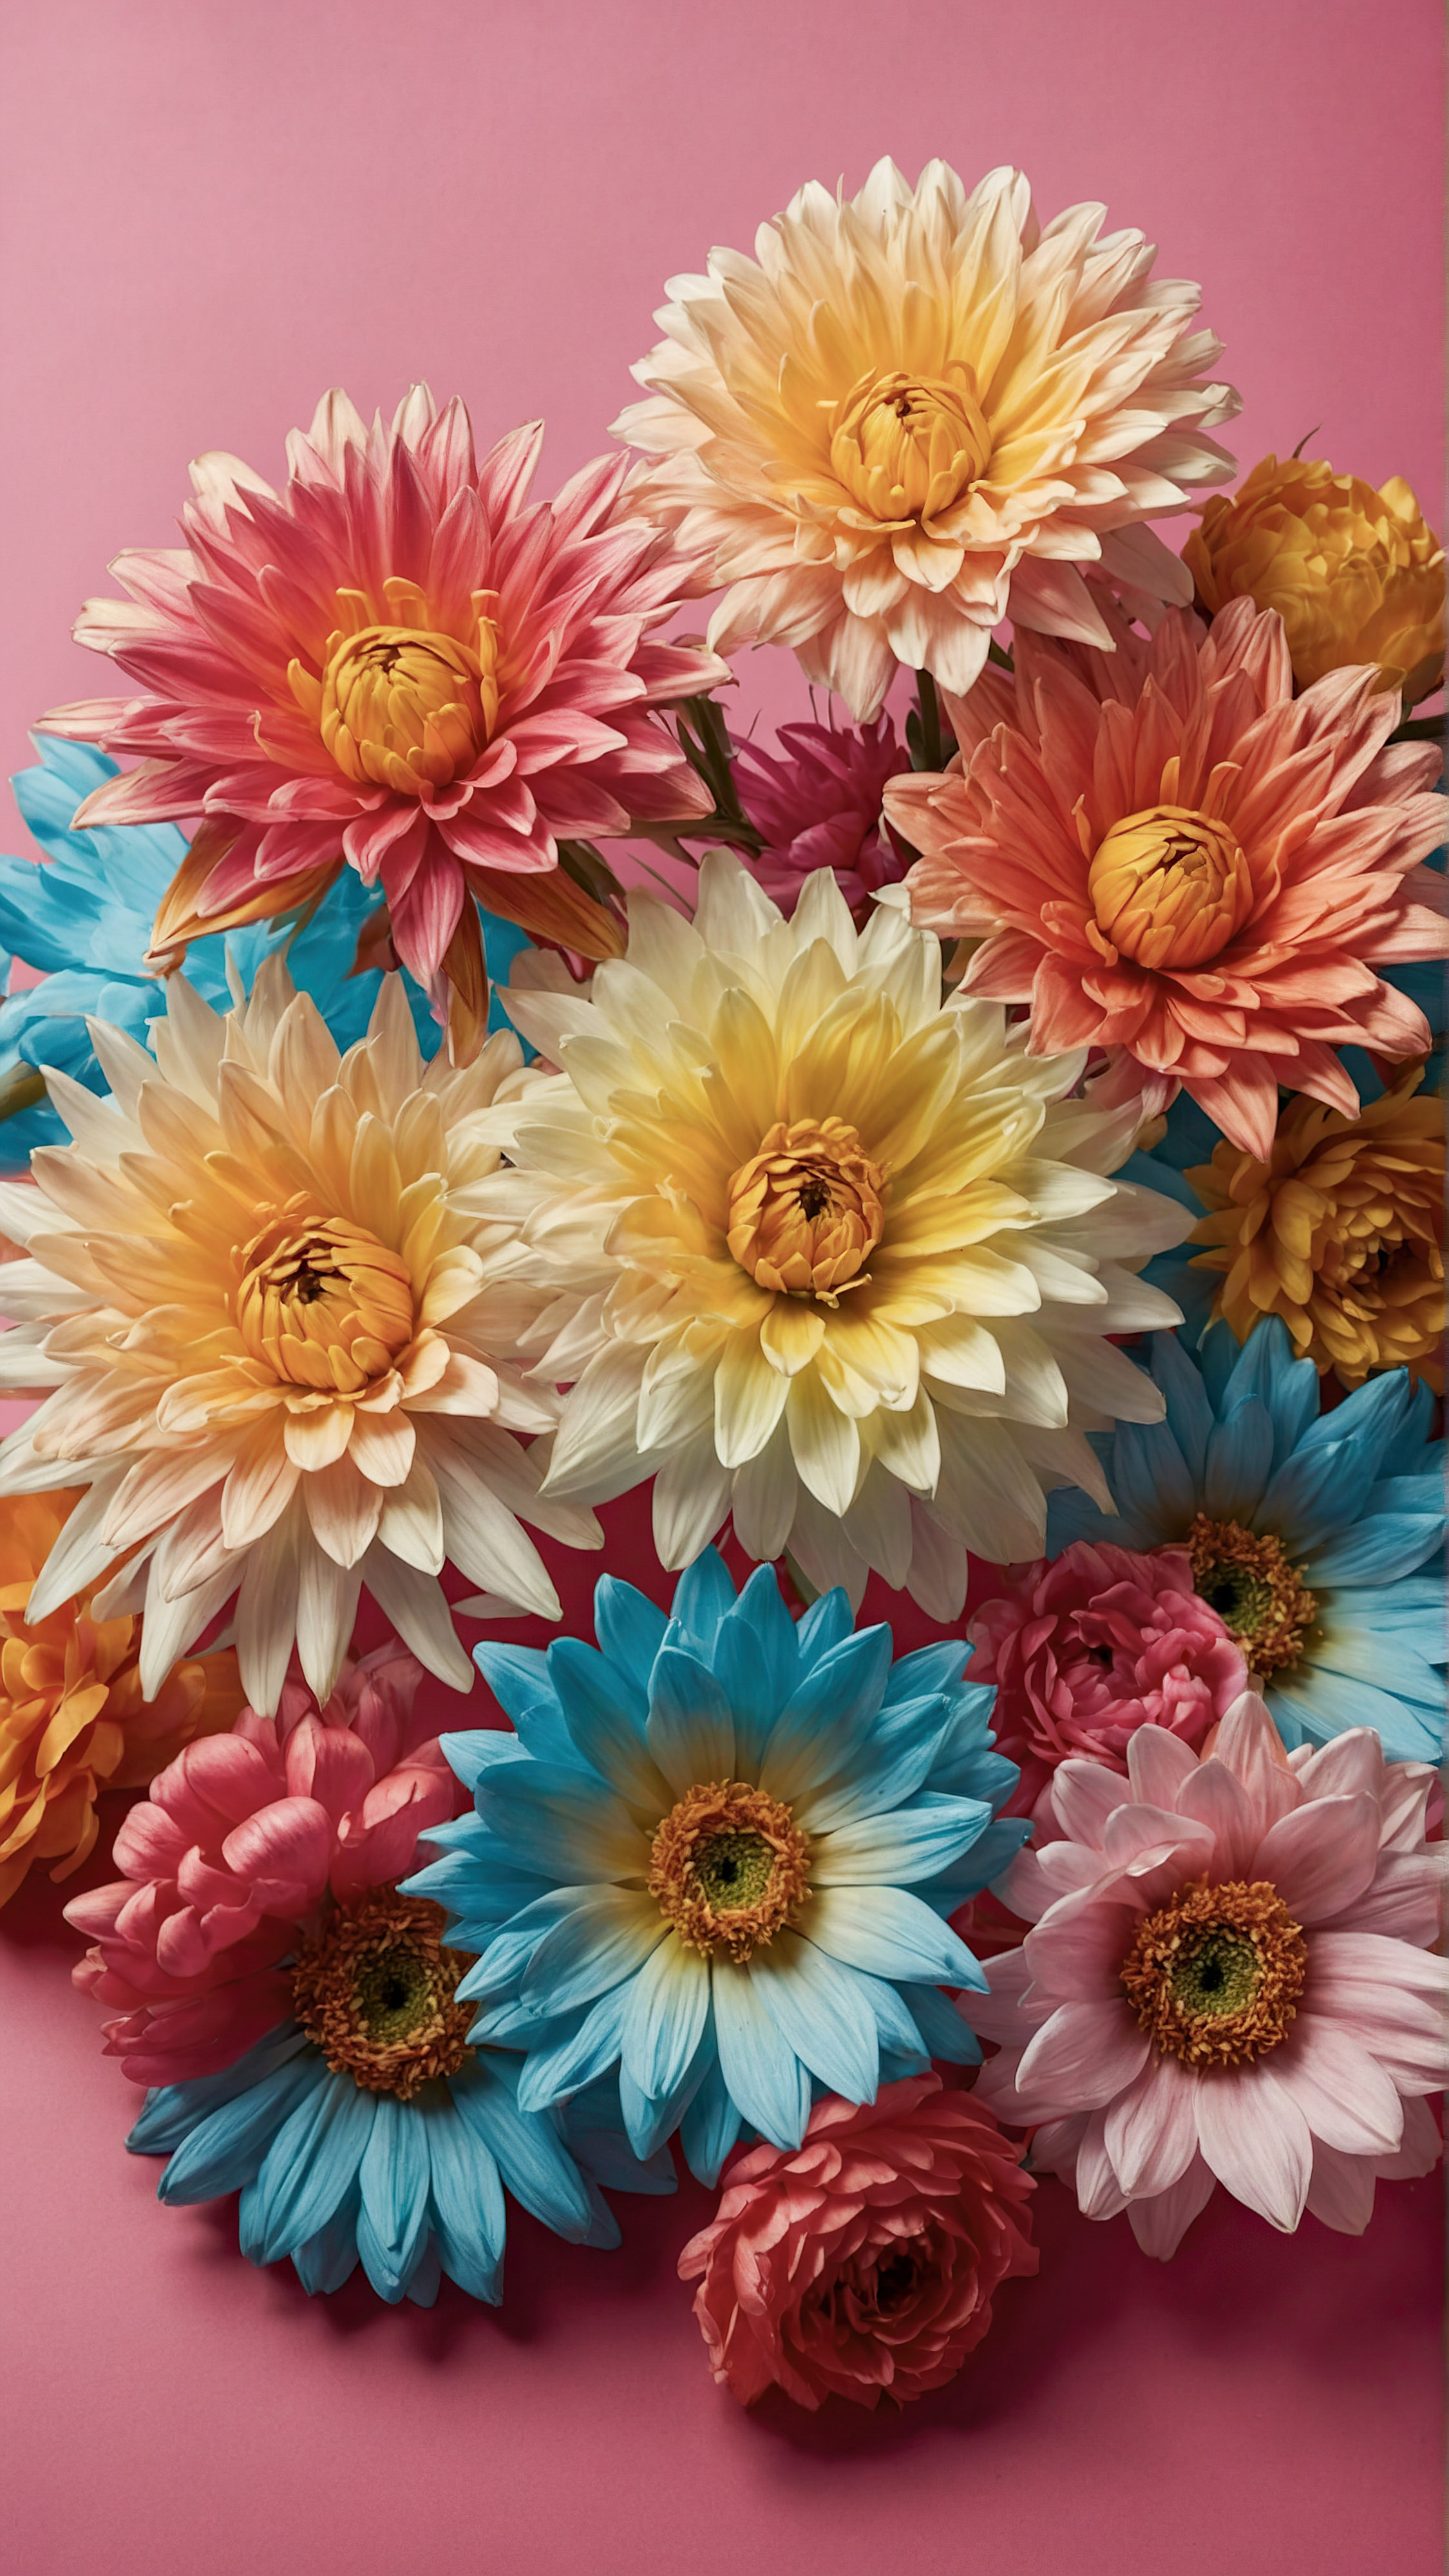 Profitez de la beauté et du style de notre bel arrière-plan pour iPhone, présentant une collection de fleurs artificielles vibrantes avec des pétales et des centres détaillés, sur un fond rose contrastant. 